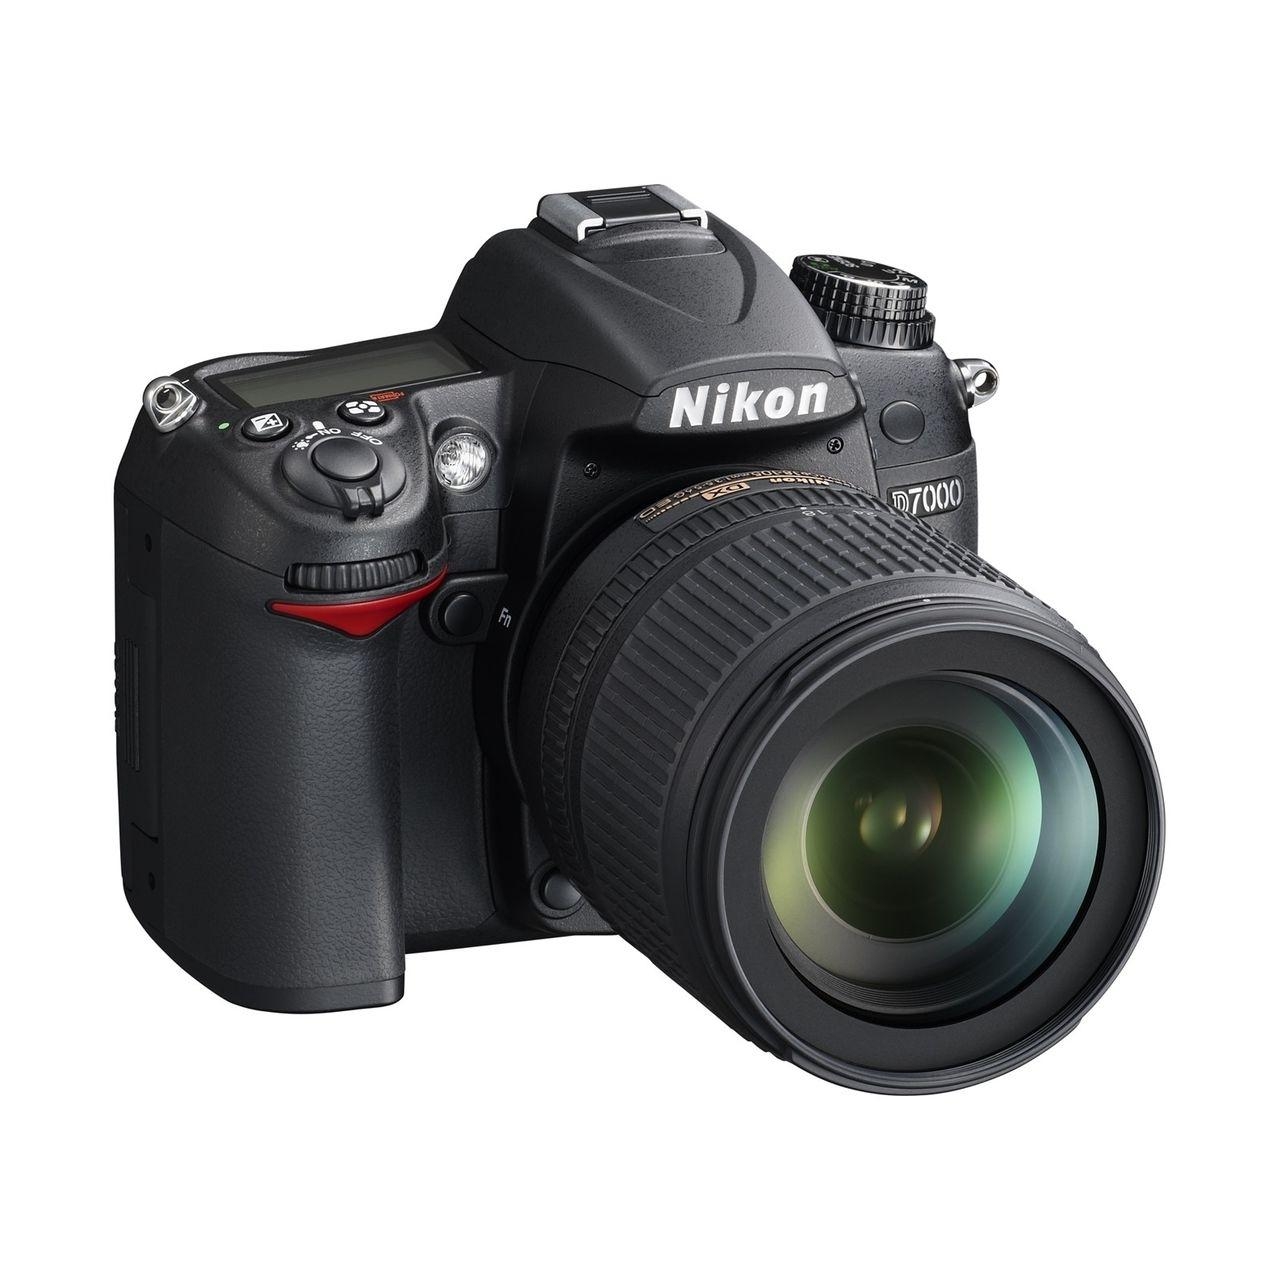 Nikon D7000 kit (18-140mm VR) - зображення 1